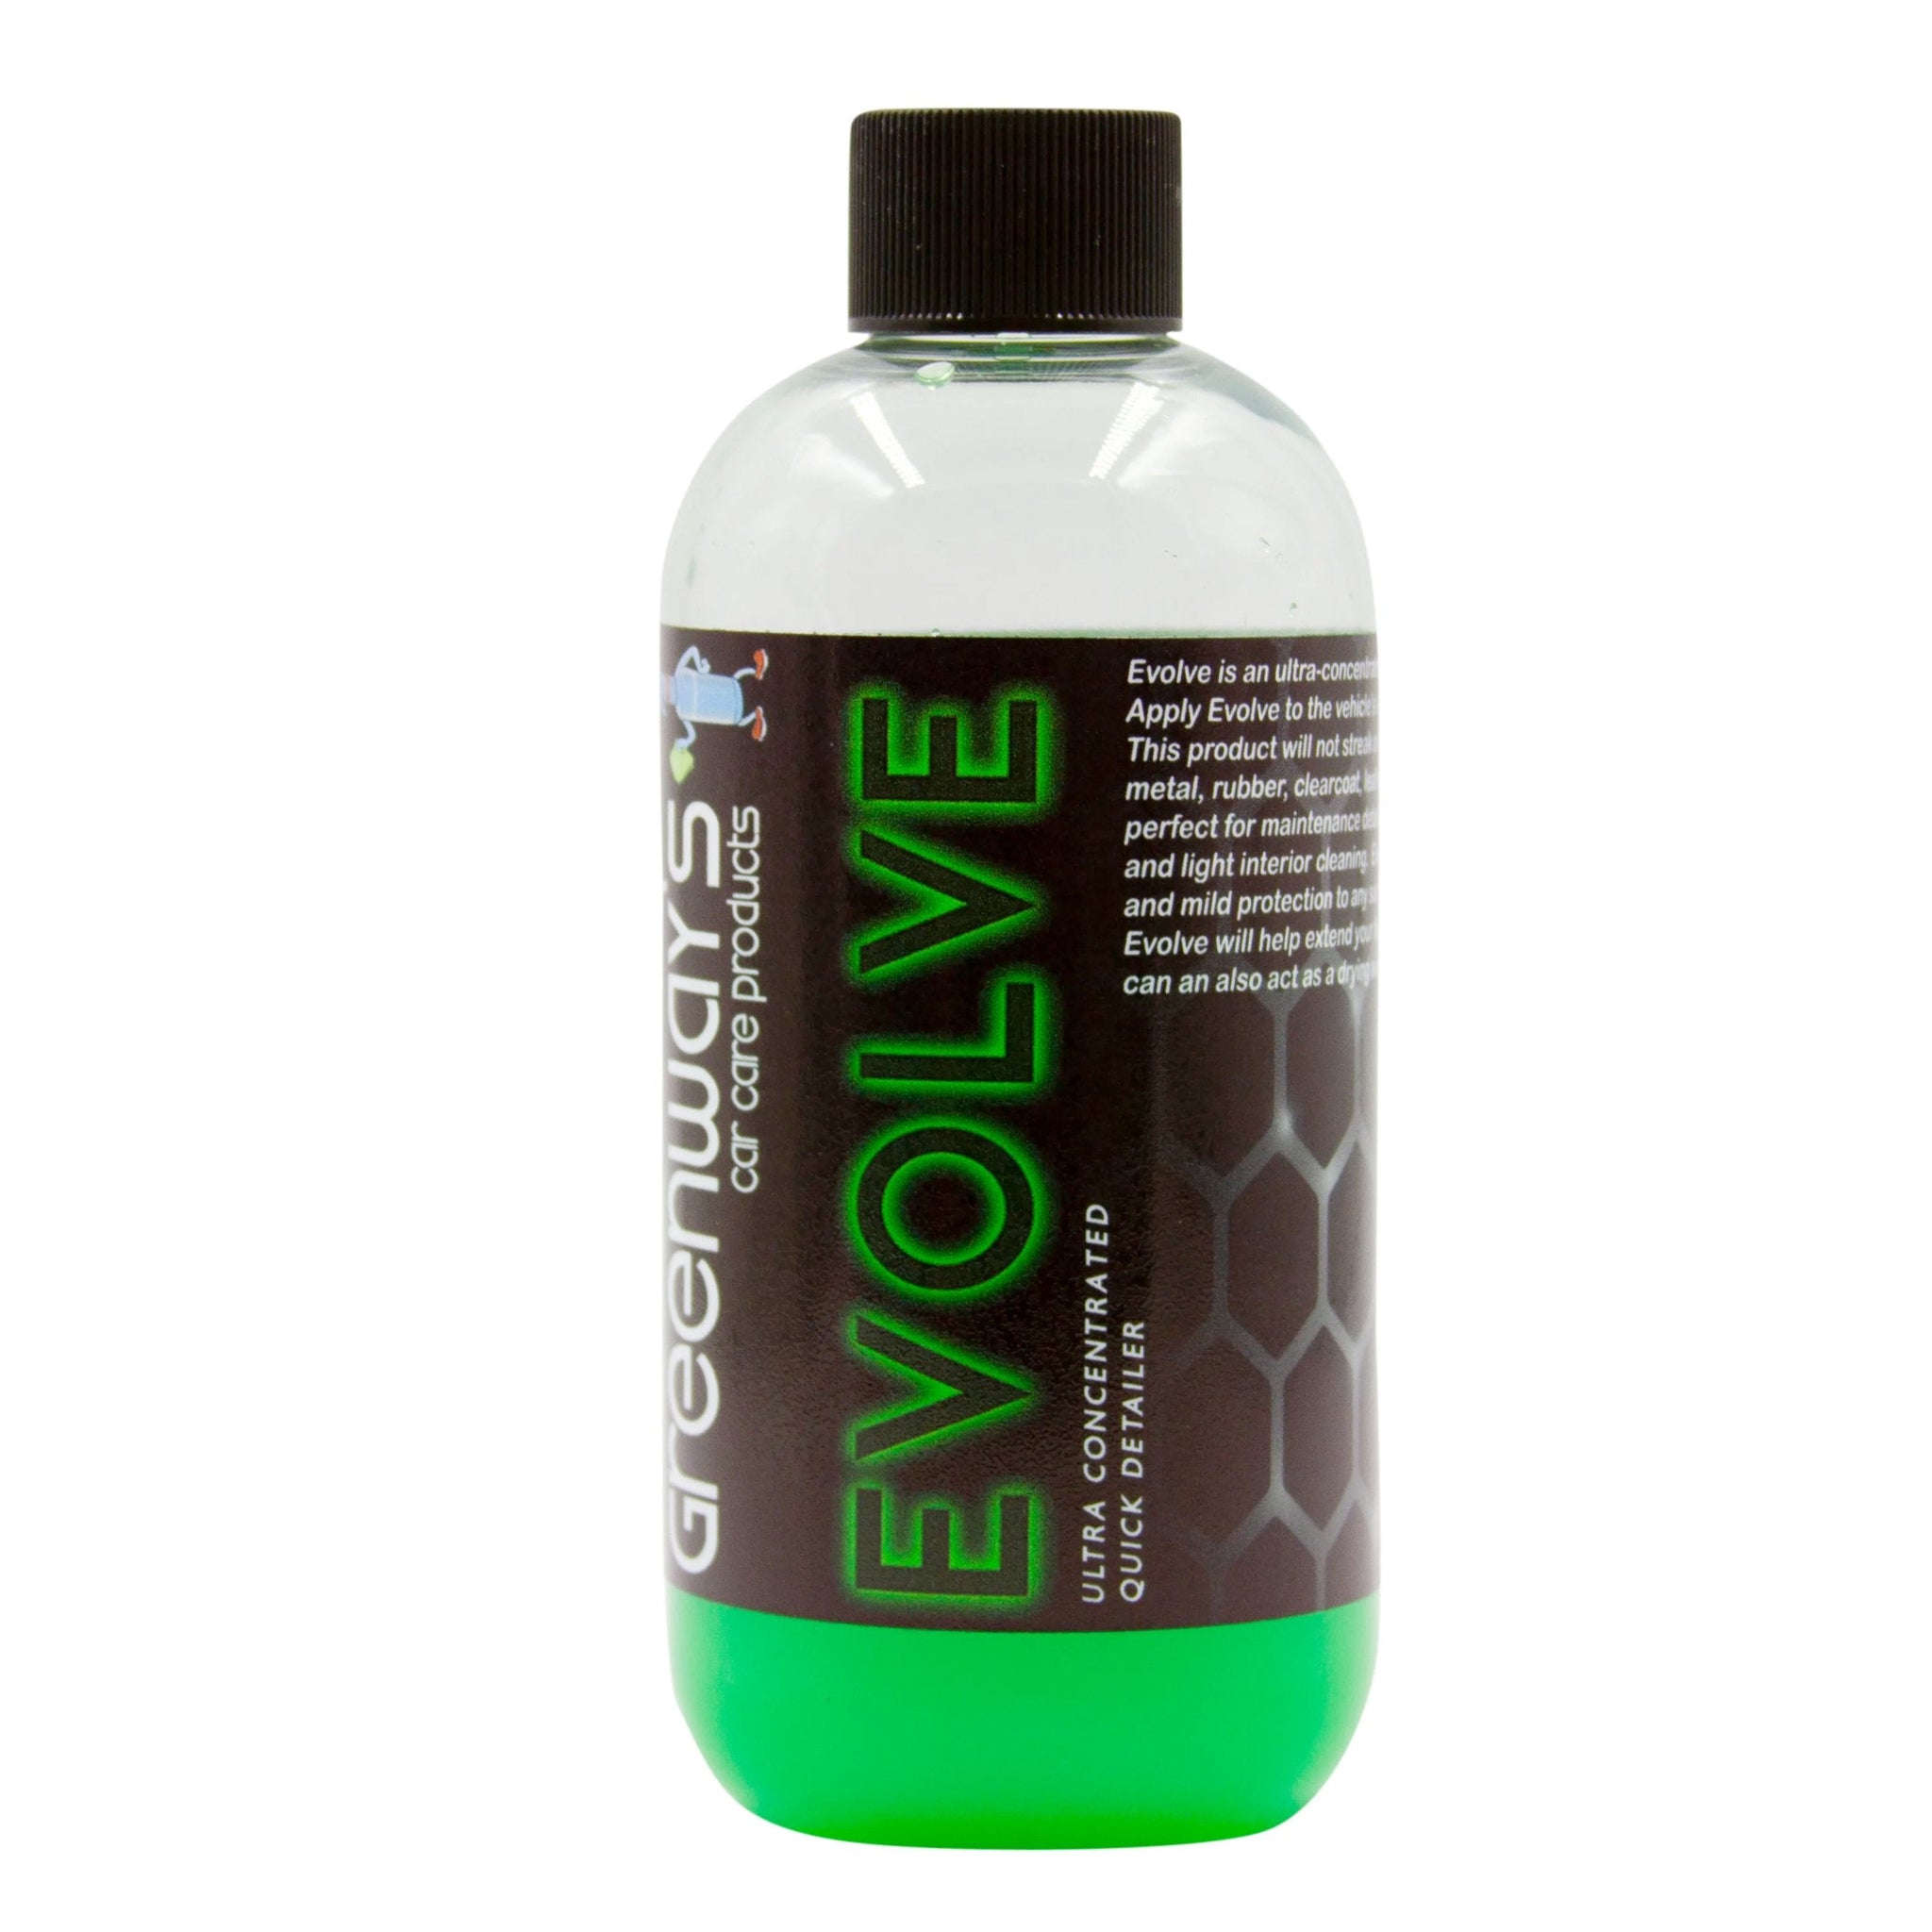 Gel-Gloss No Streek Glass Wax Cleaner 8 oz. - Spray